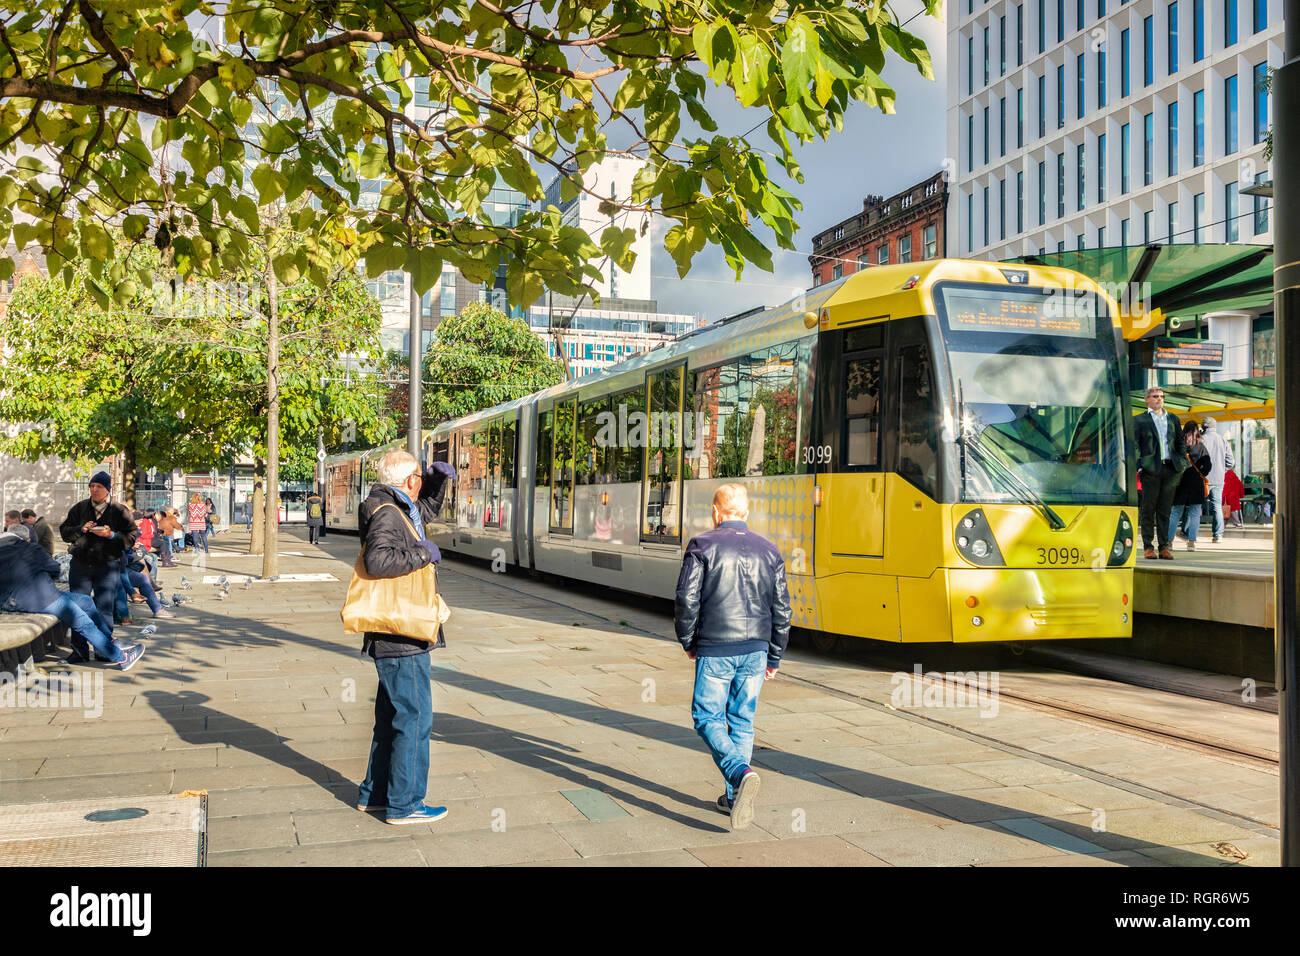 2 novembre 2018 : Manchester, UK - tramway Metrolink à St Peter's Square dans le soleil d'automne. Banque D'Images